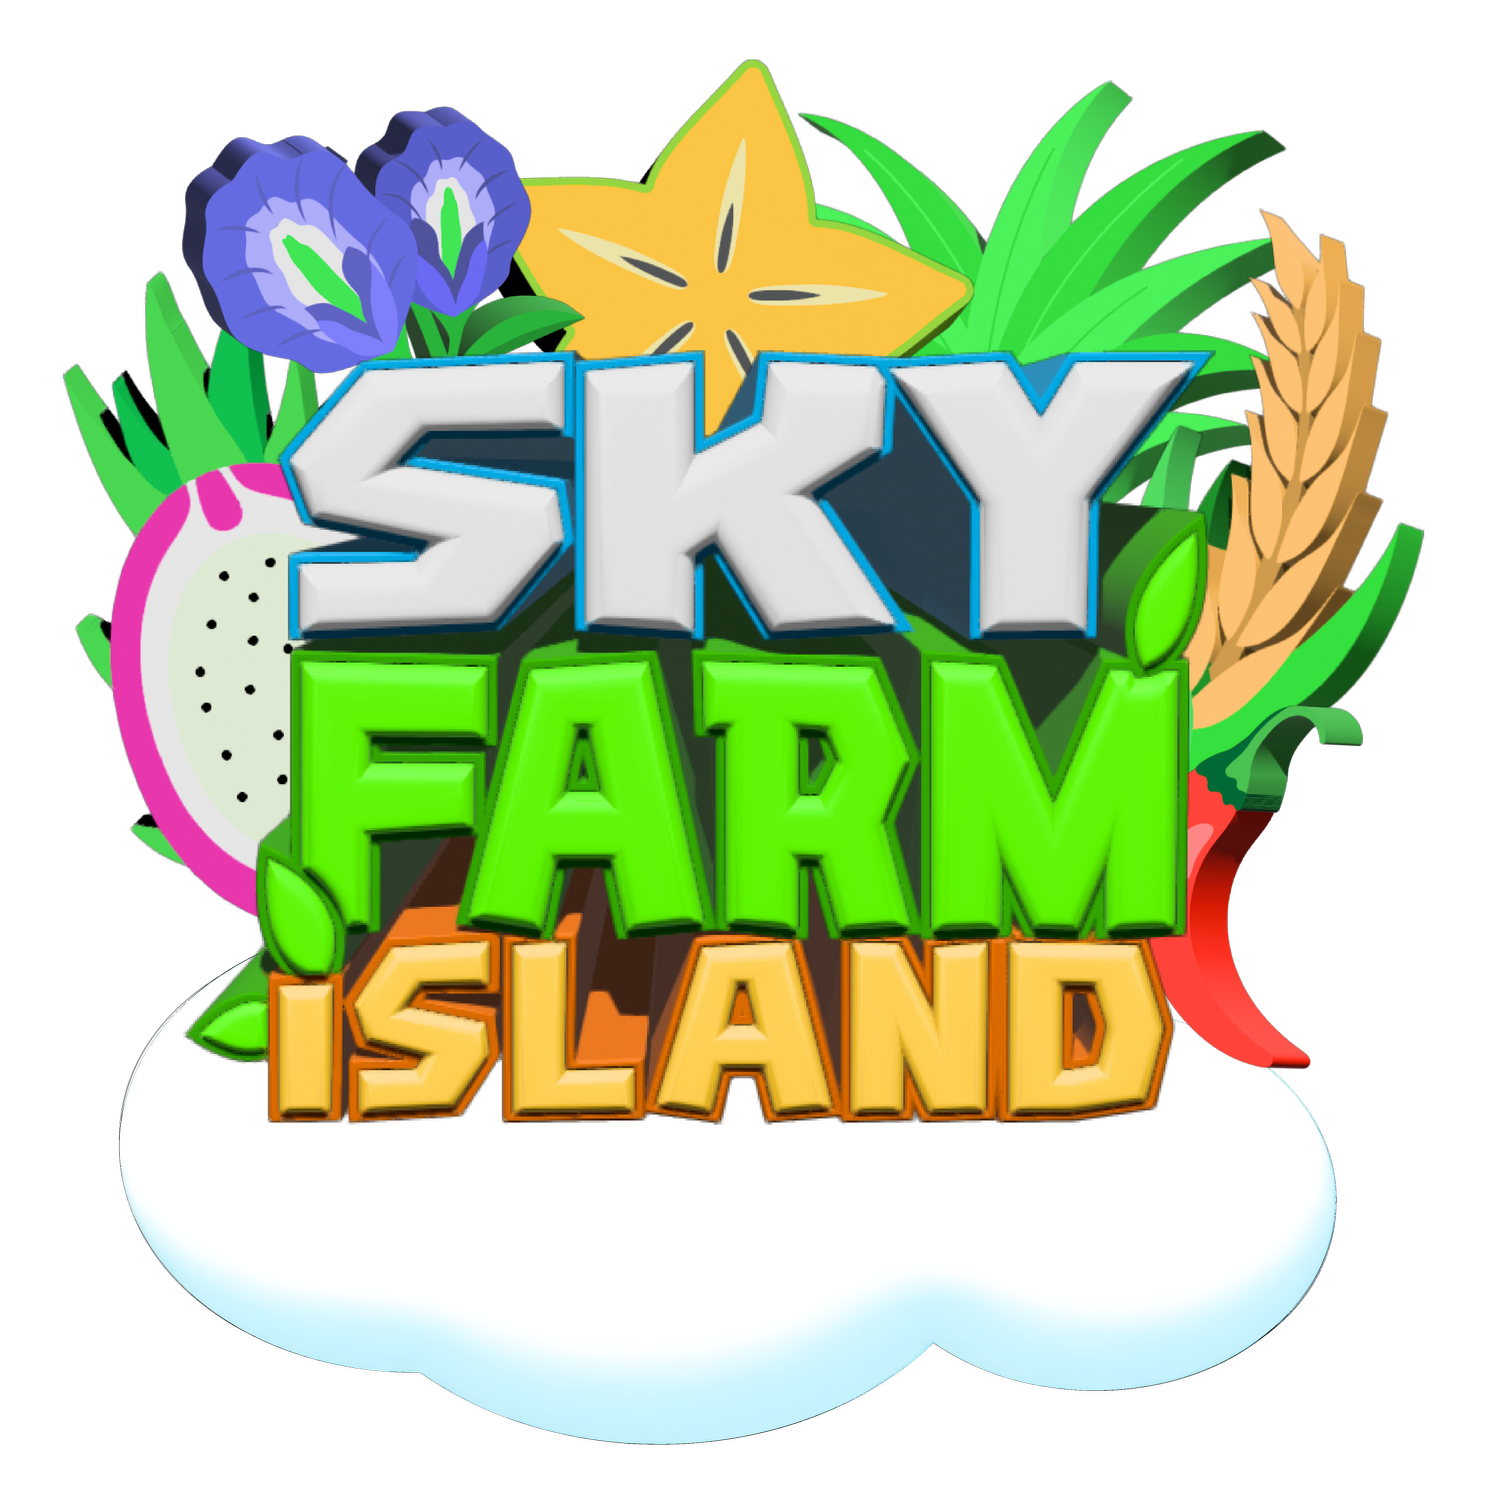 Sky Farm Island